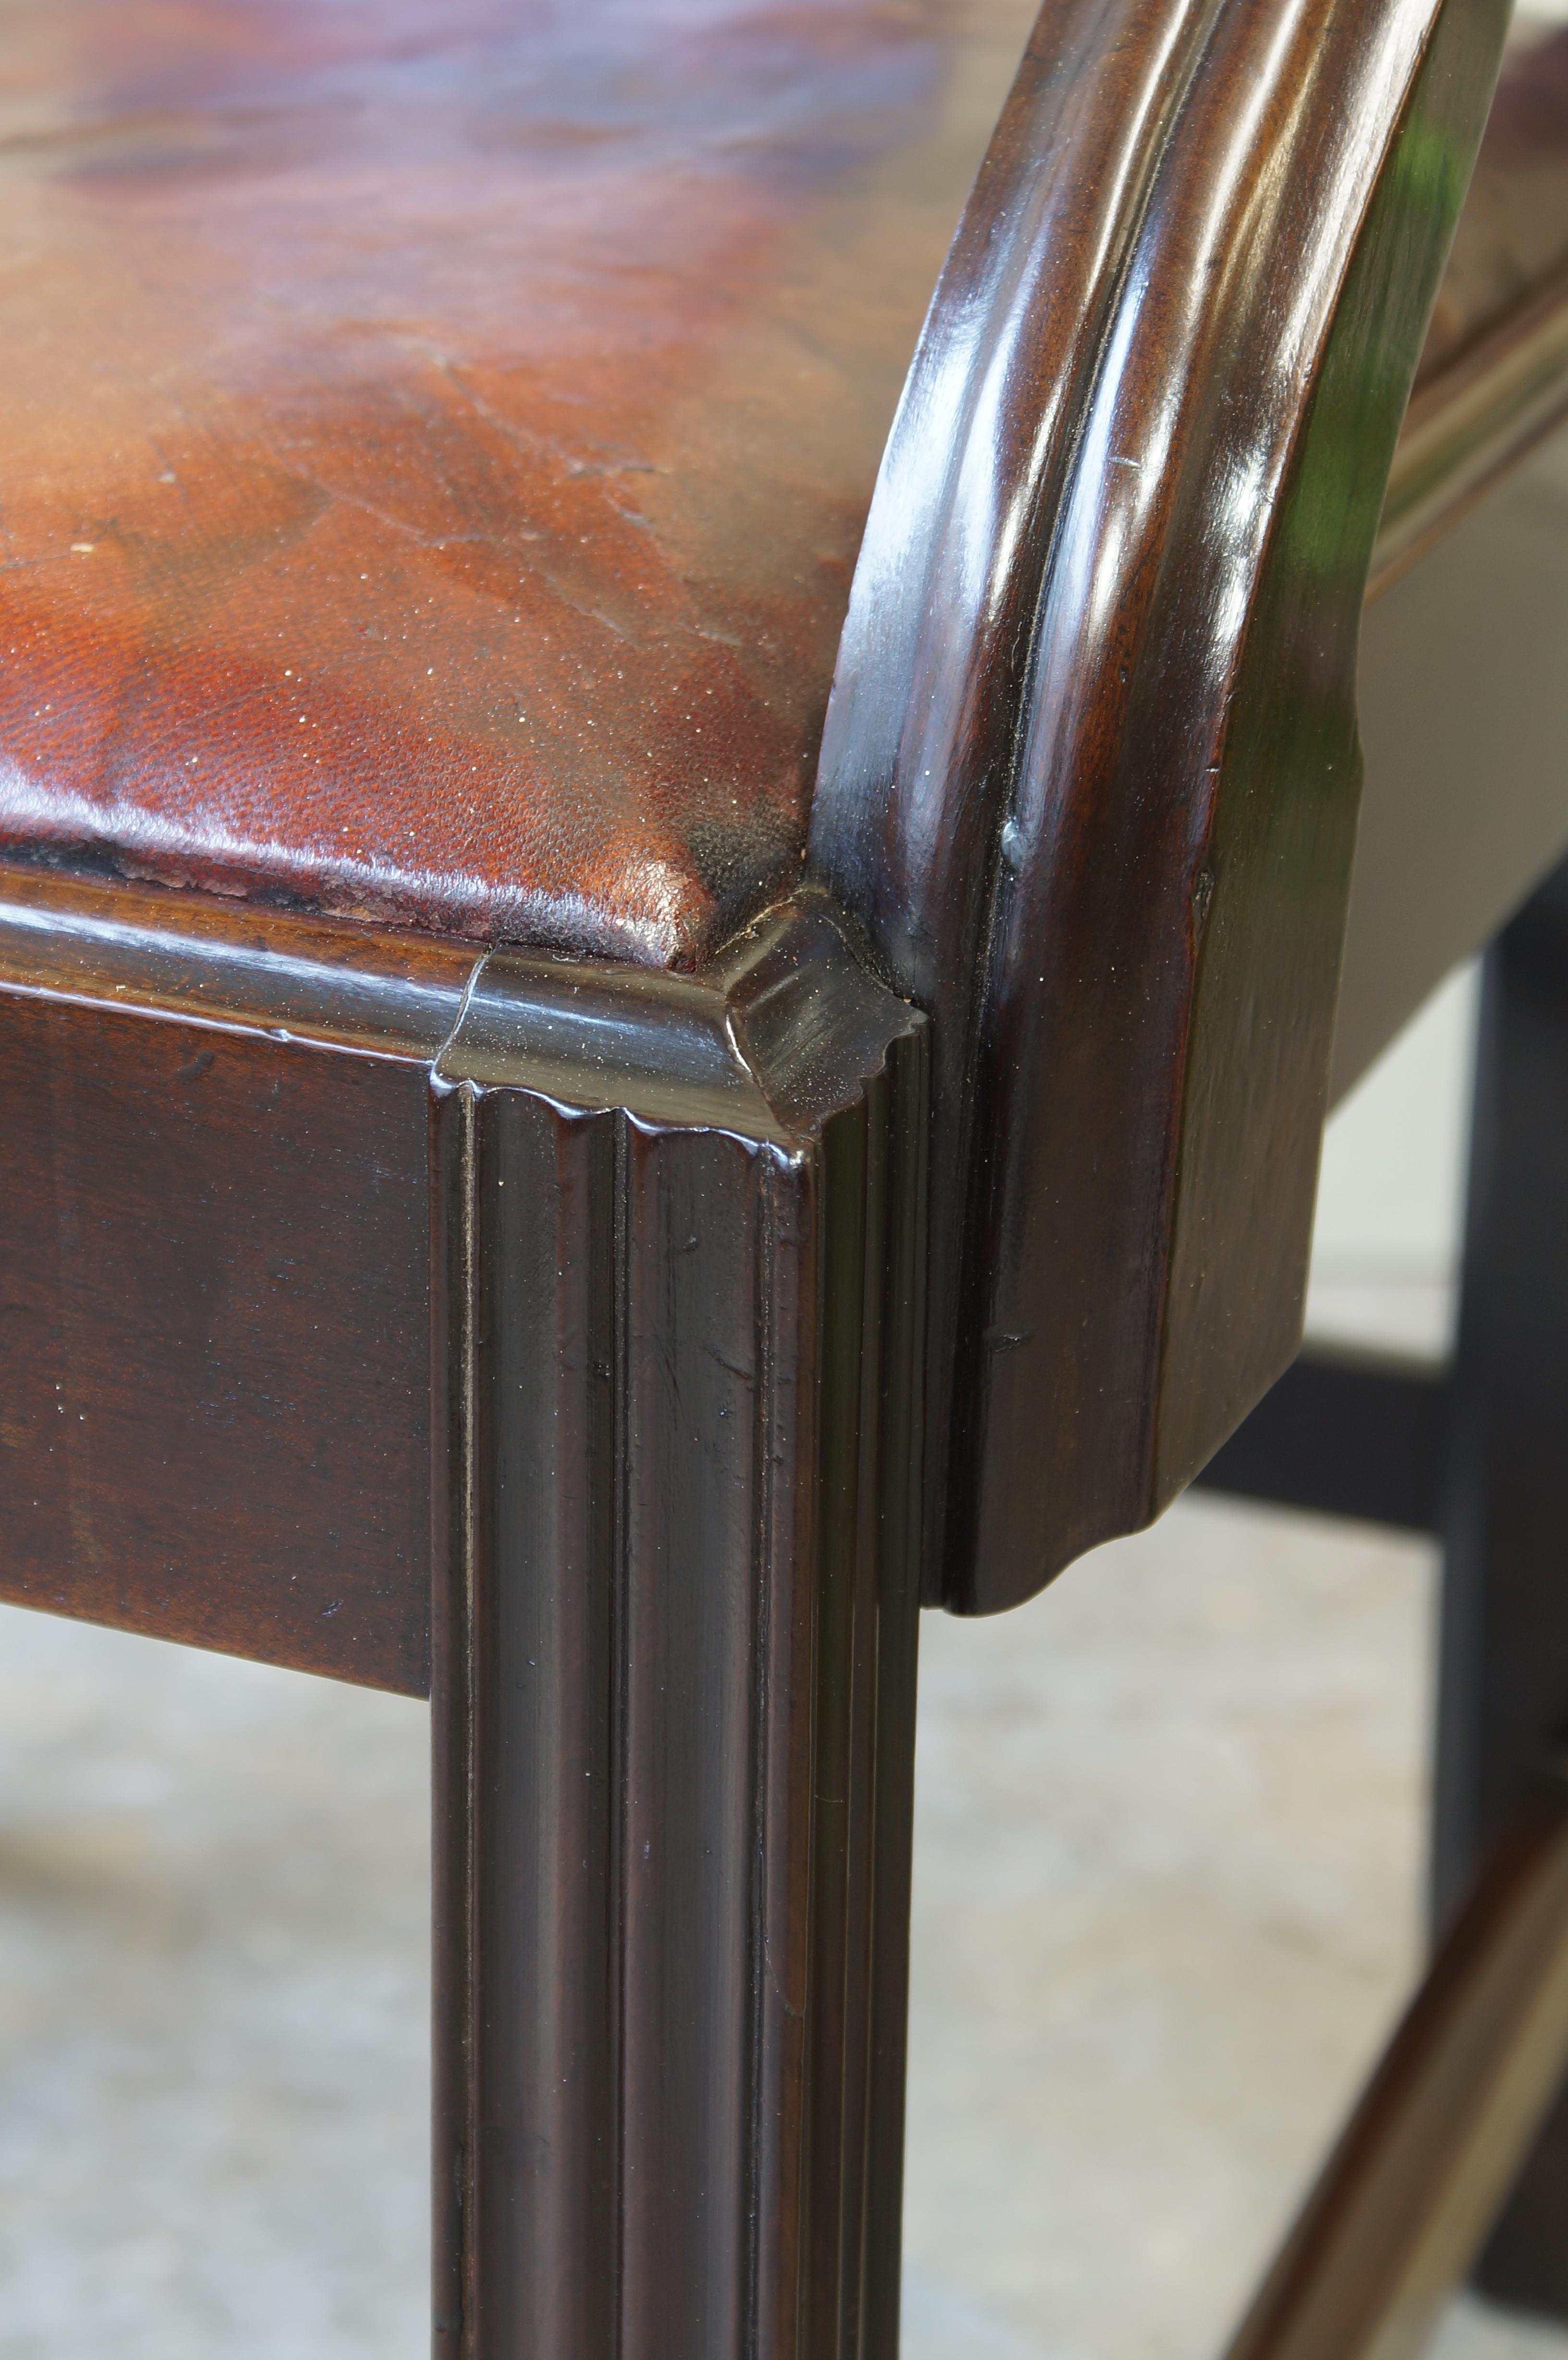 Ein feiner und seltener George III Laburnum Sessel von großen Proportionen und von guter Farbe und Patina. Mit einer gut geformten oberen Schiene, einer geformten und ausgefransten Leiste und gut geformten Armen, die perfekt fließen.
Dieser große